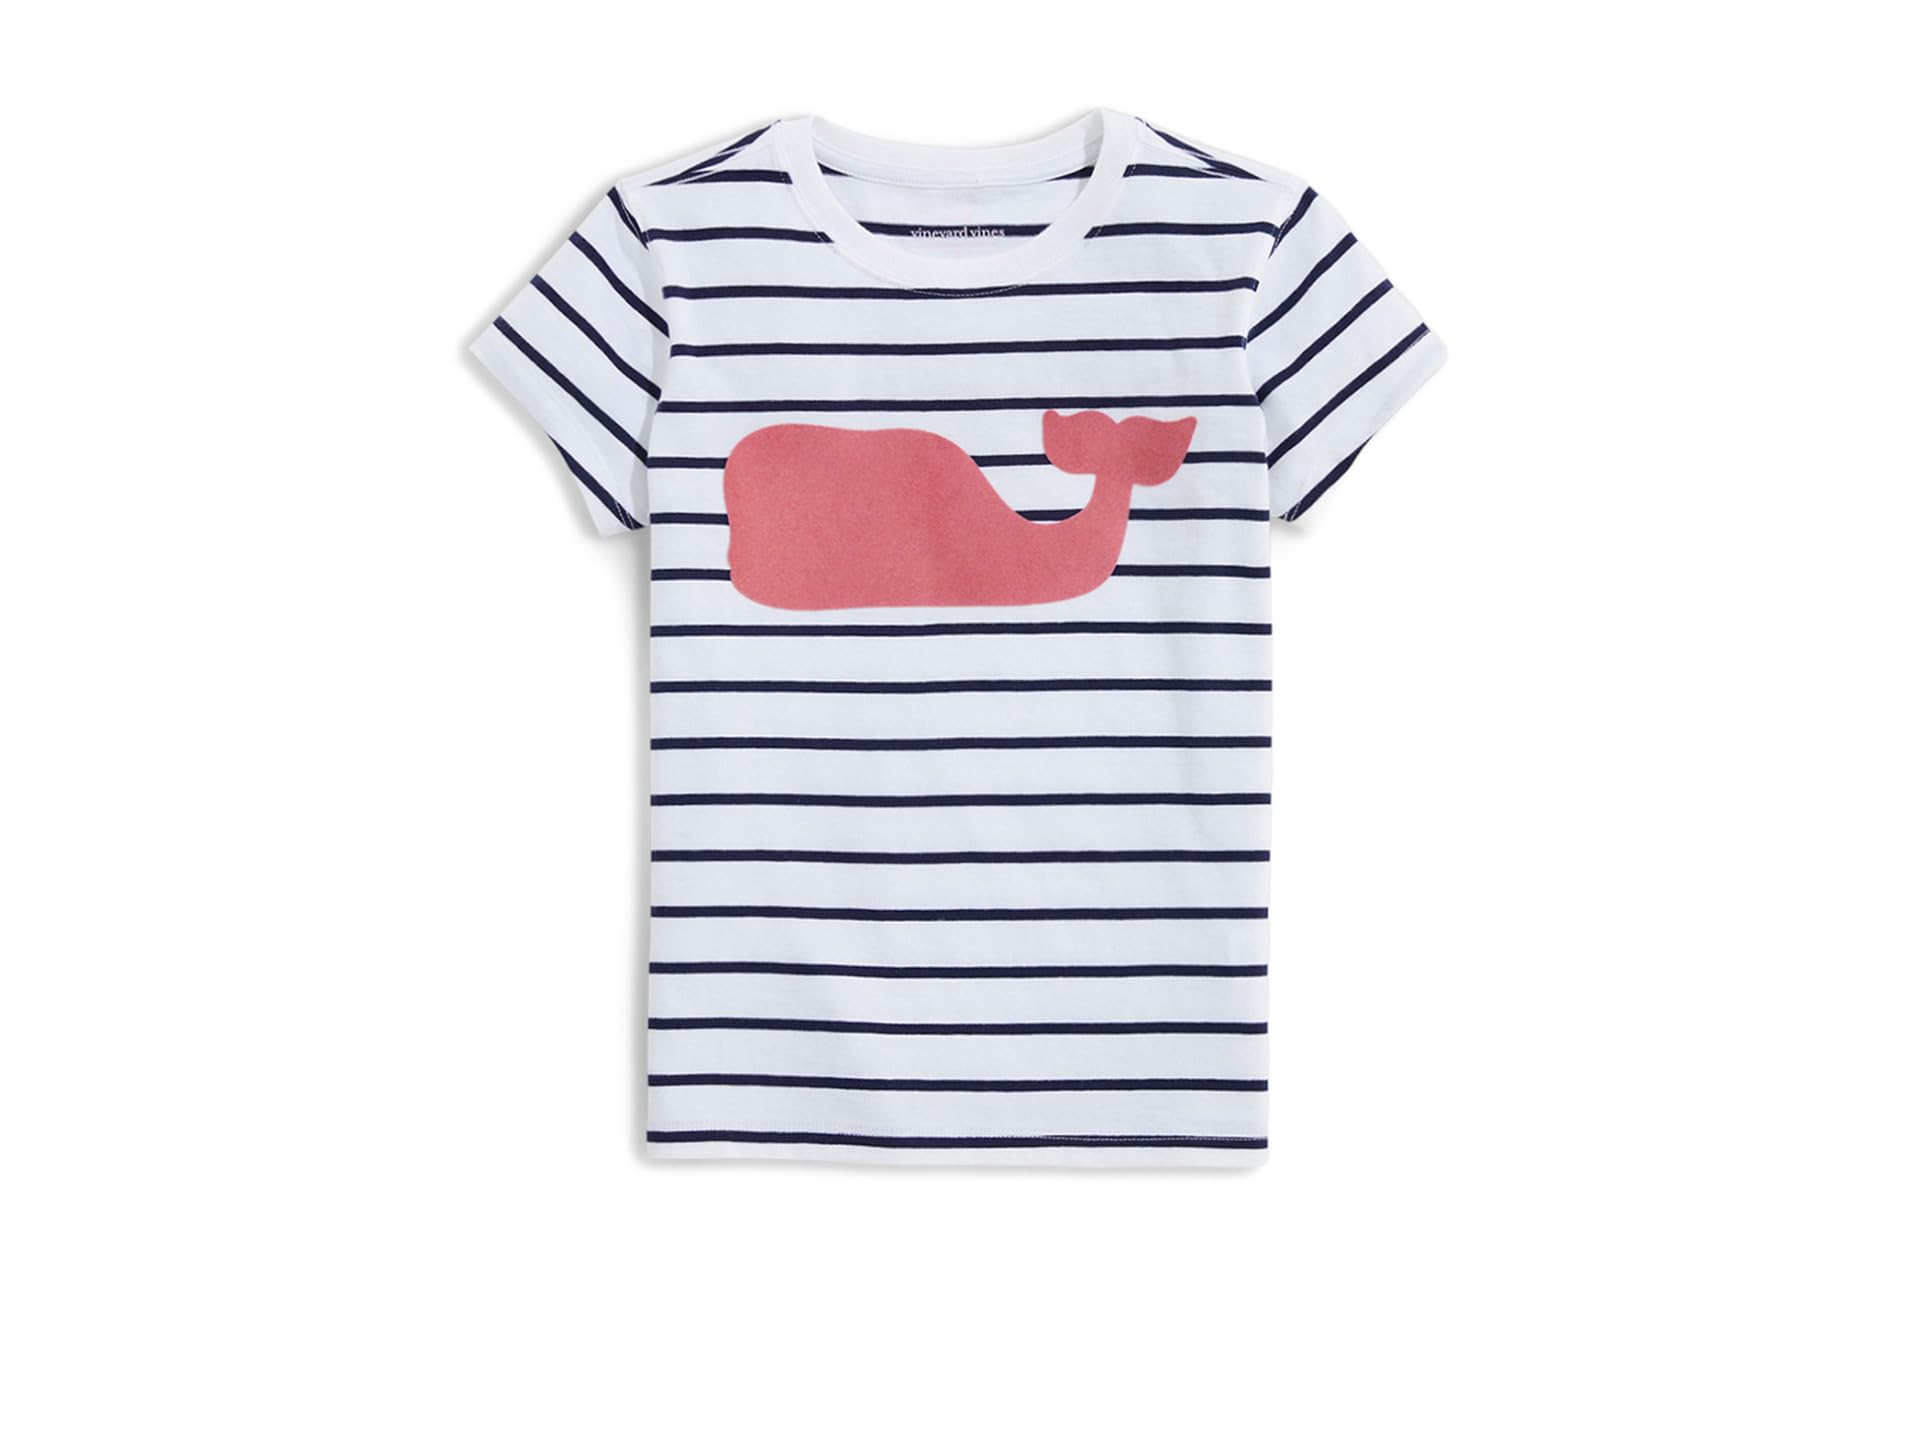 Полосатые футболки с изображением кита для девочек с короткими рукавами (Little Kid) Vineyard Vines Kids